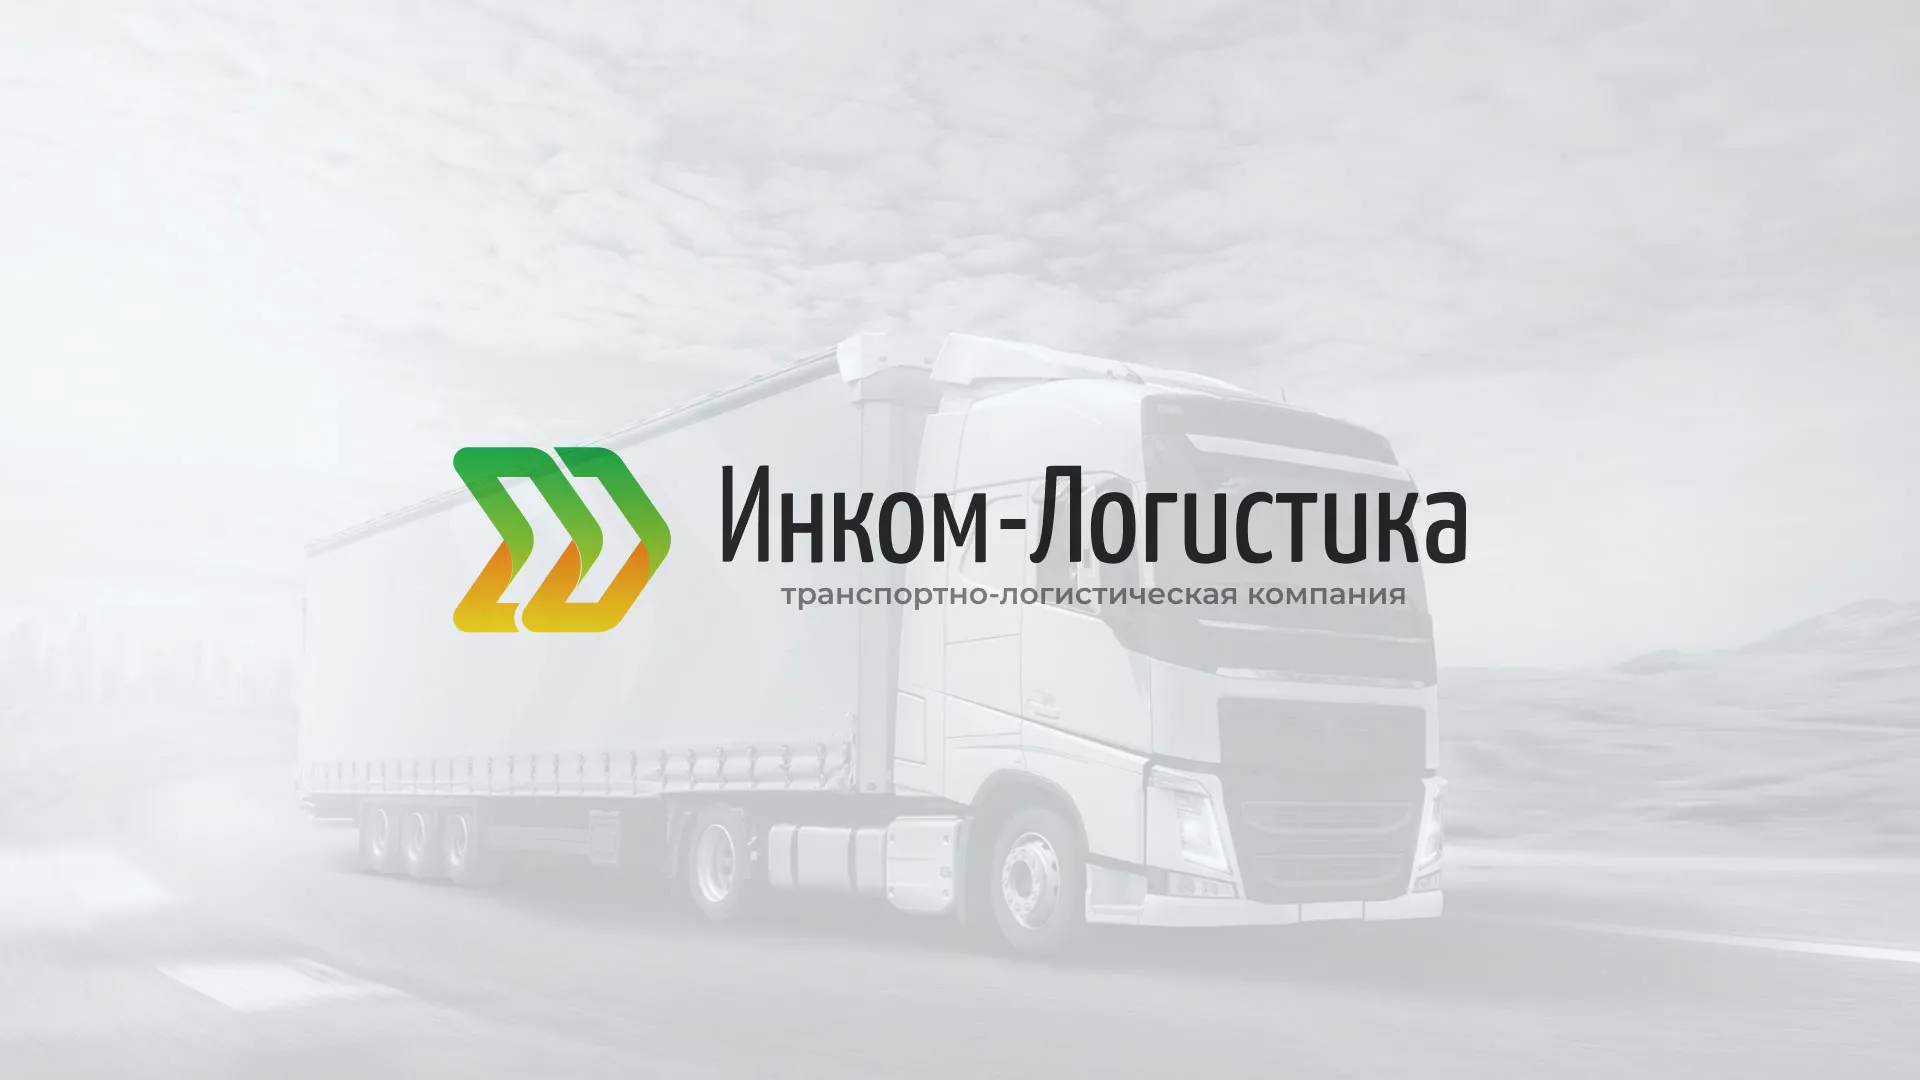 Разработка логотипа и сайта компании «Инком-Логистика» в Оленегорске